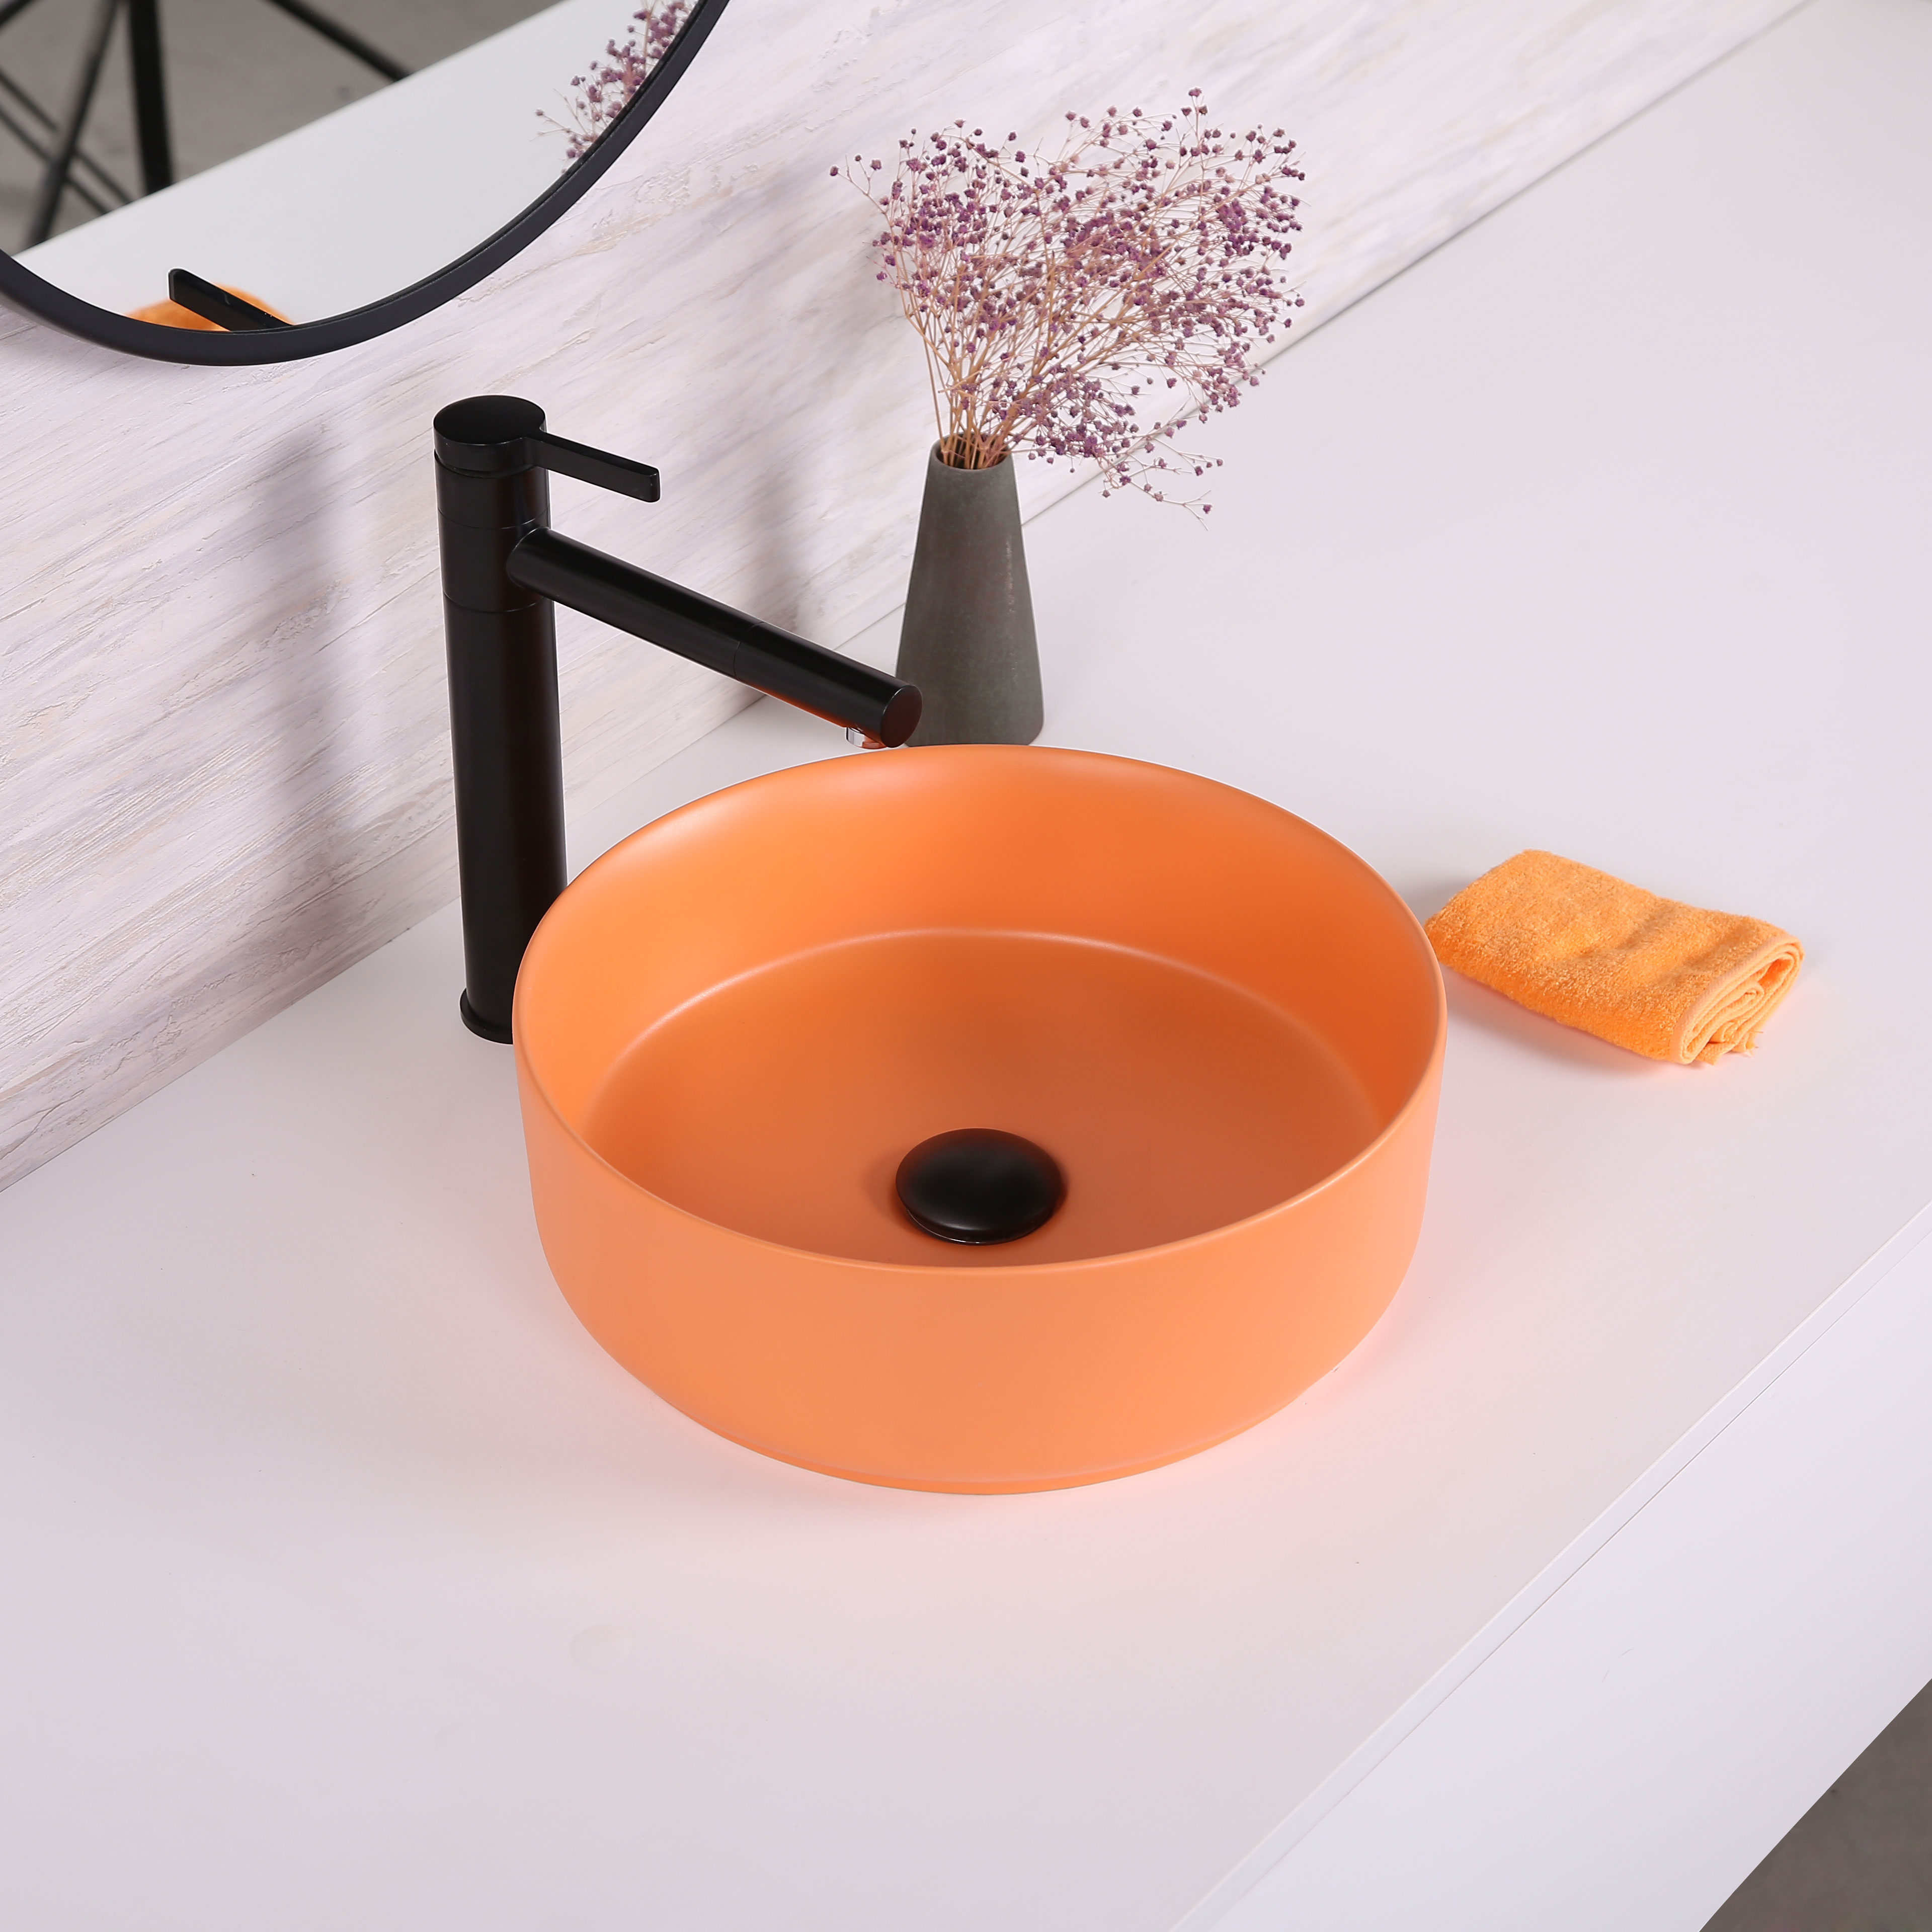 Bồn rửa bằng gốm hình tròn màu mờ được làm thủ công Lưu vực phòng tắm phổ biến